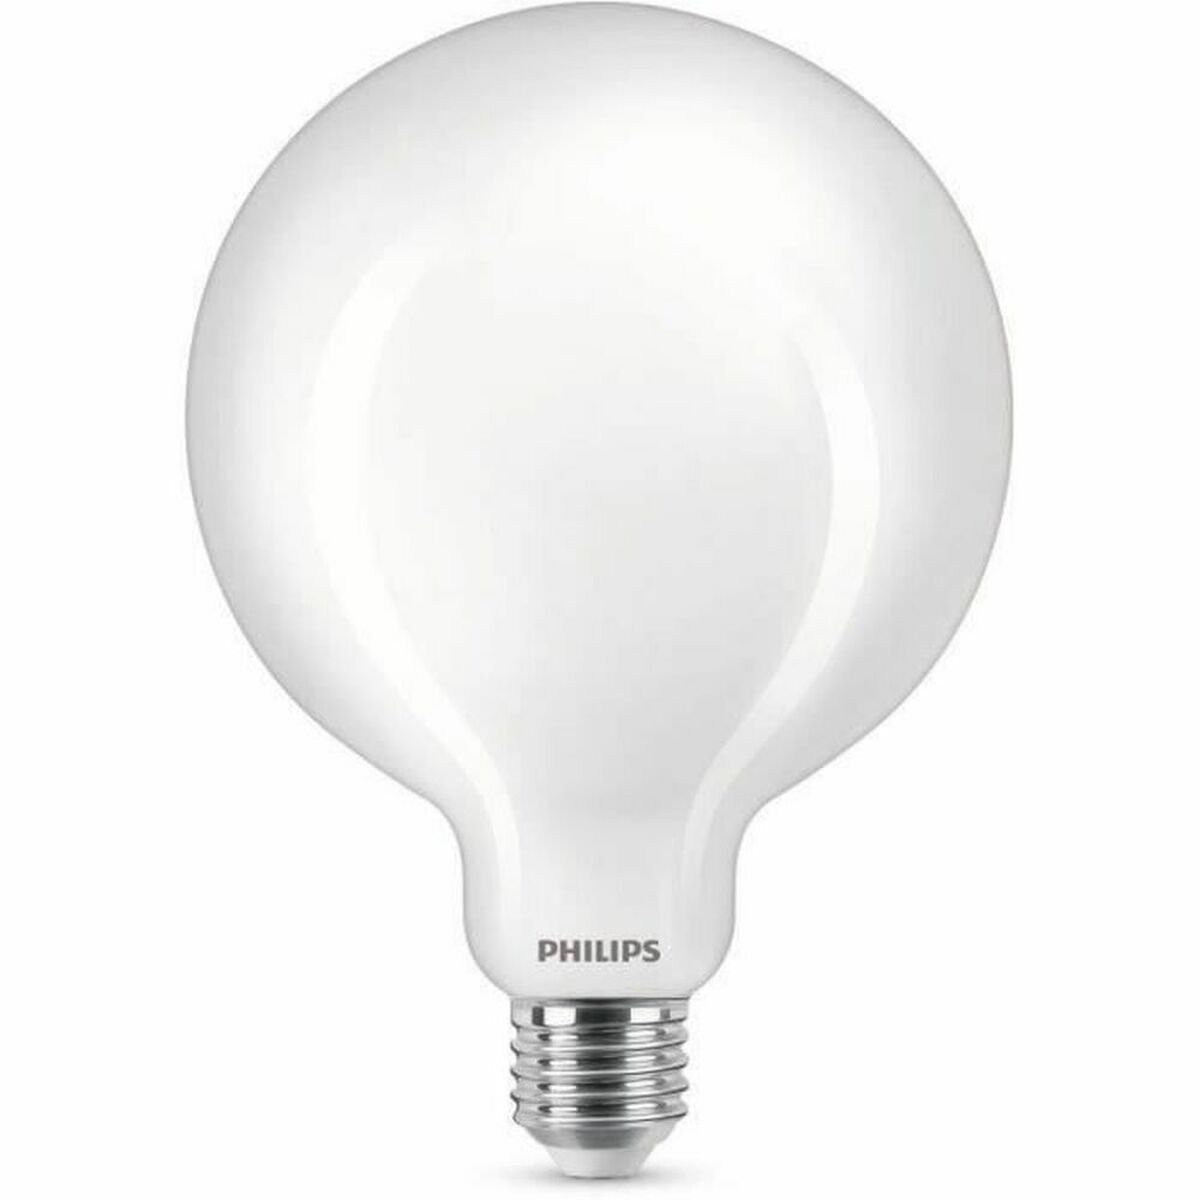 Ledlamp Philips Wit D 13 W E27 2000 Lm 12,4 x 17,7 cm (2700 K)